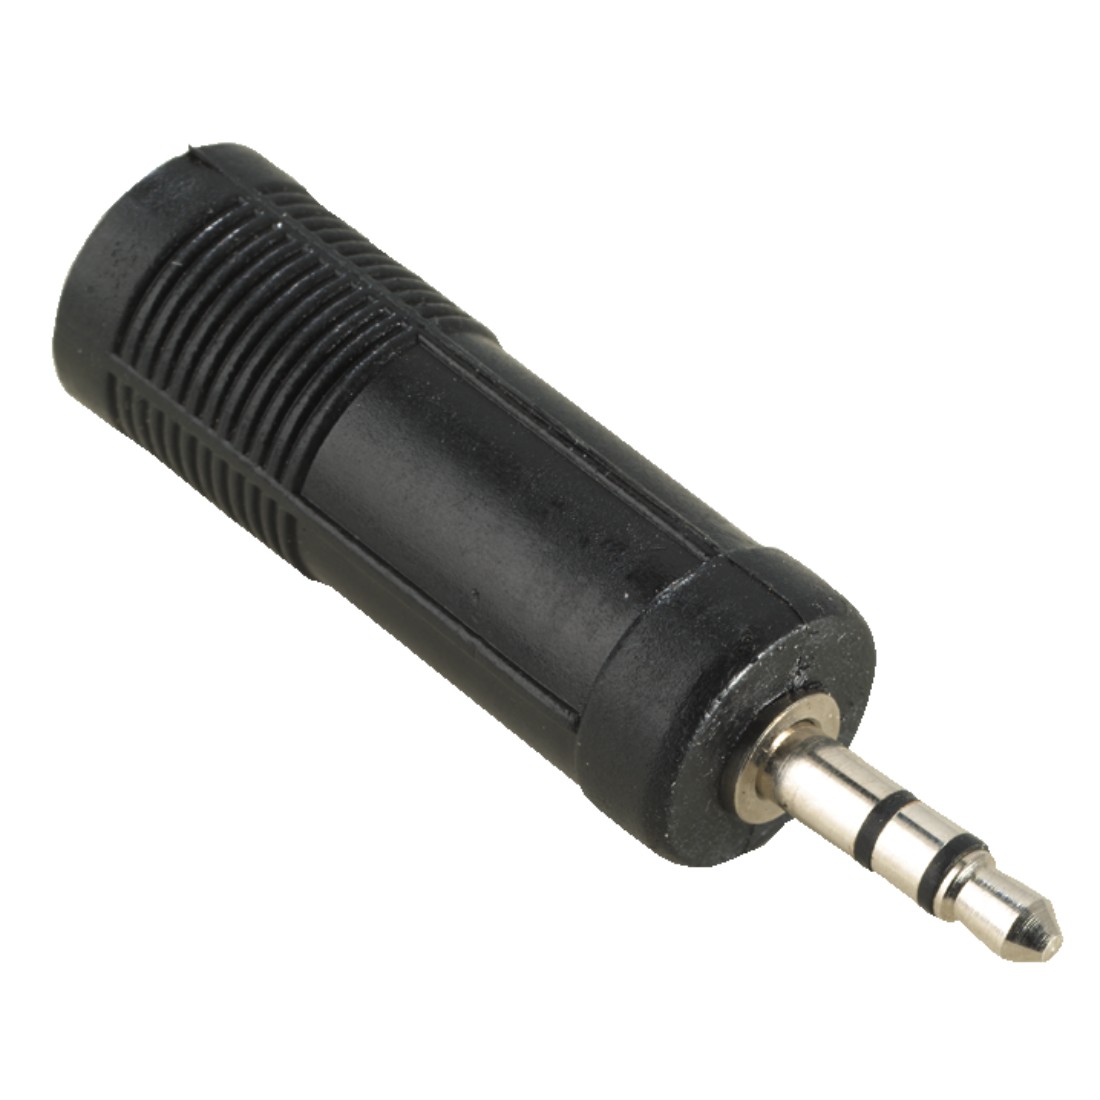 Hama Audio 3,5 mm Male Plug – 6,3 mm Female Jack adapter